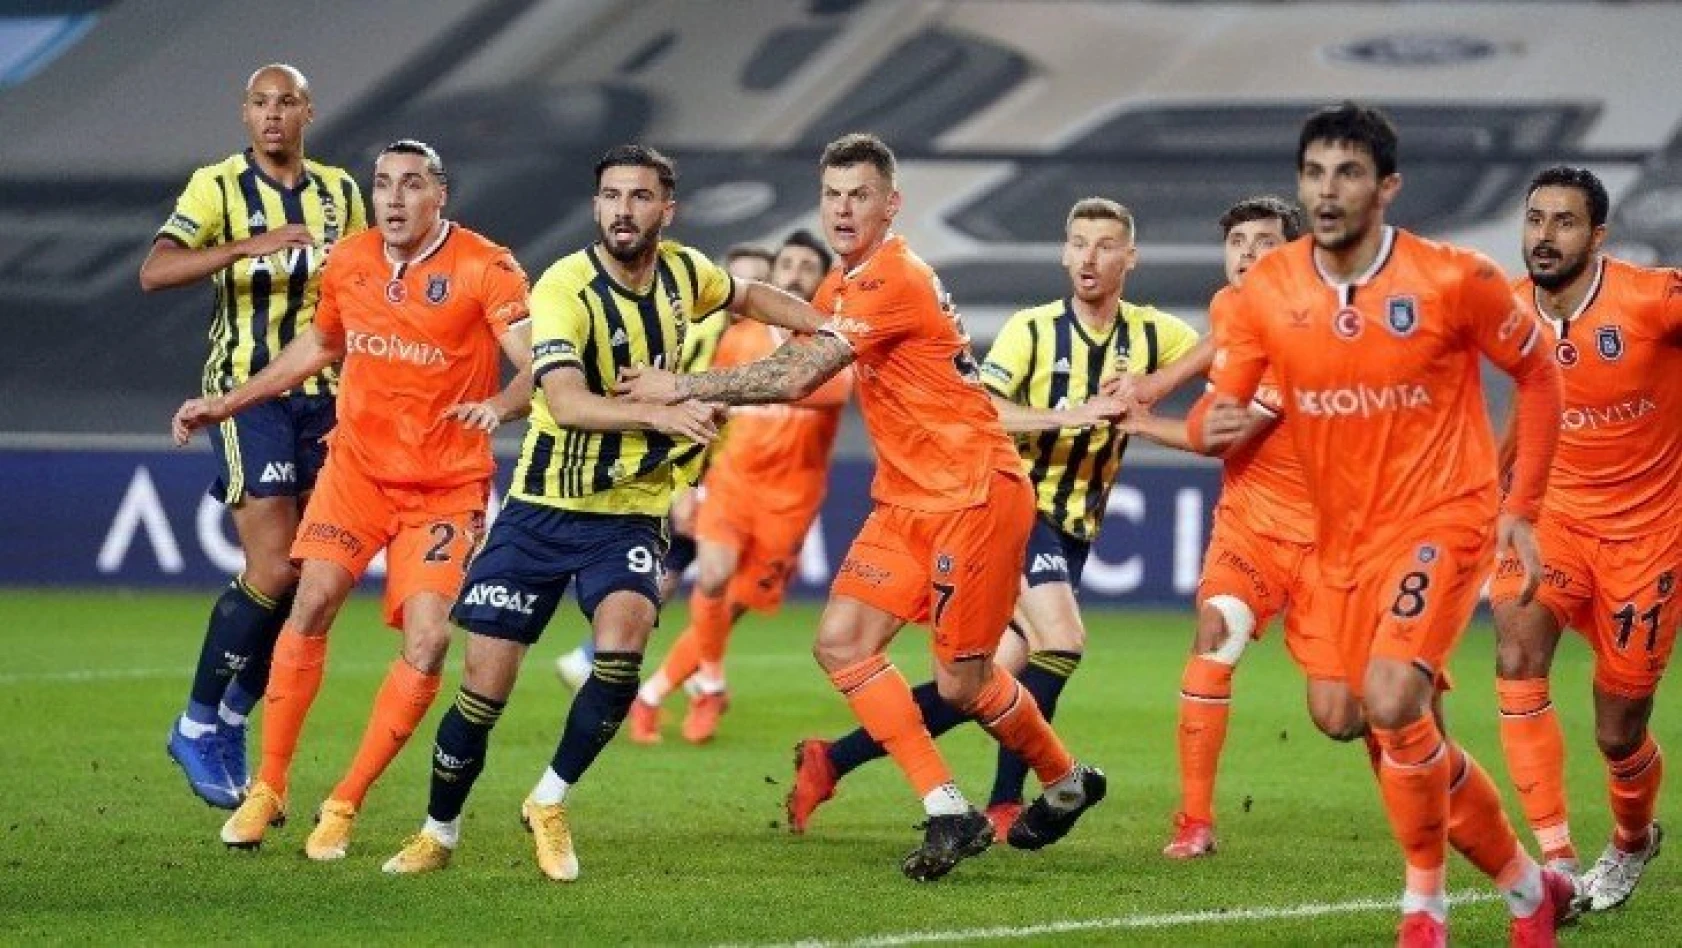 Nefes kesen maçta kazanan Fenerbahçe! 5 gol, 3 kırmızı kart...